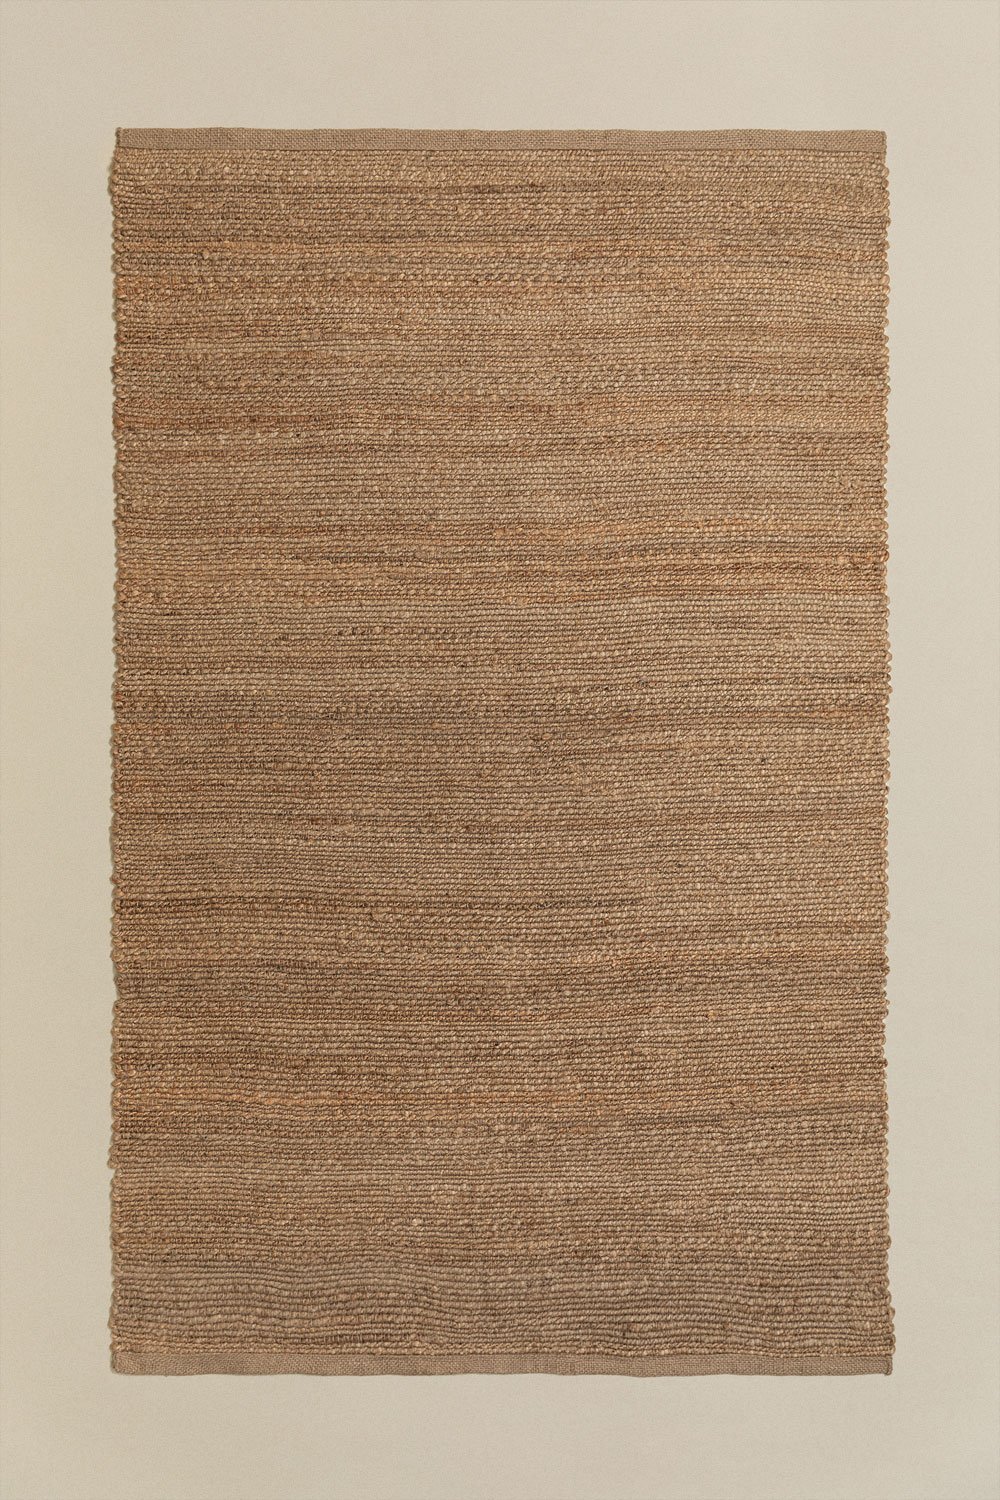 Jute vloerkleed (180x120 cm) Sulerot , galerij beeld 1